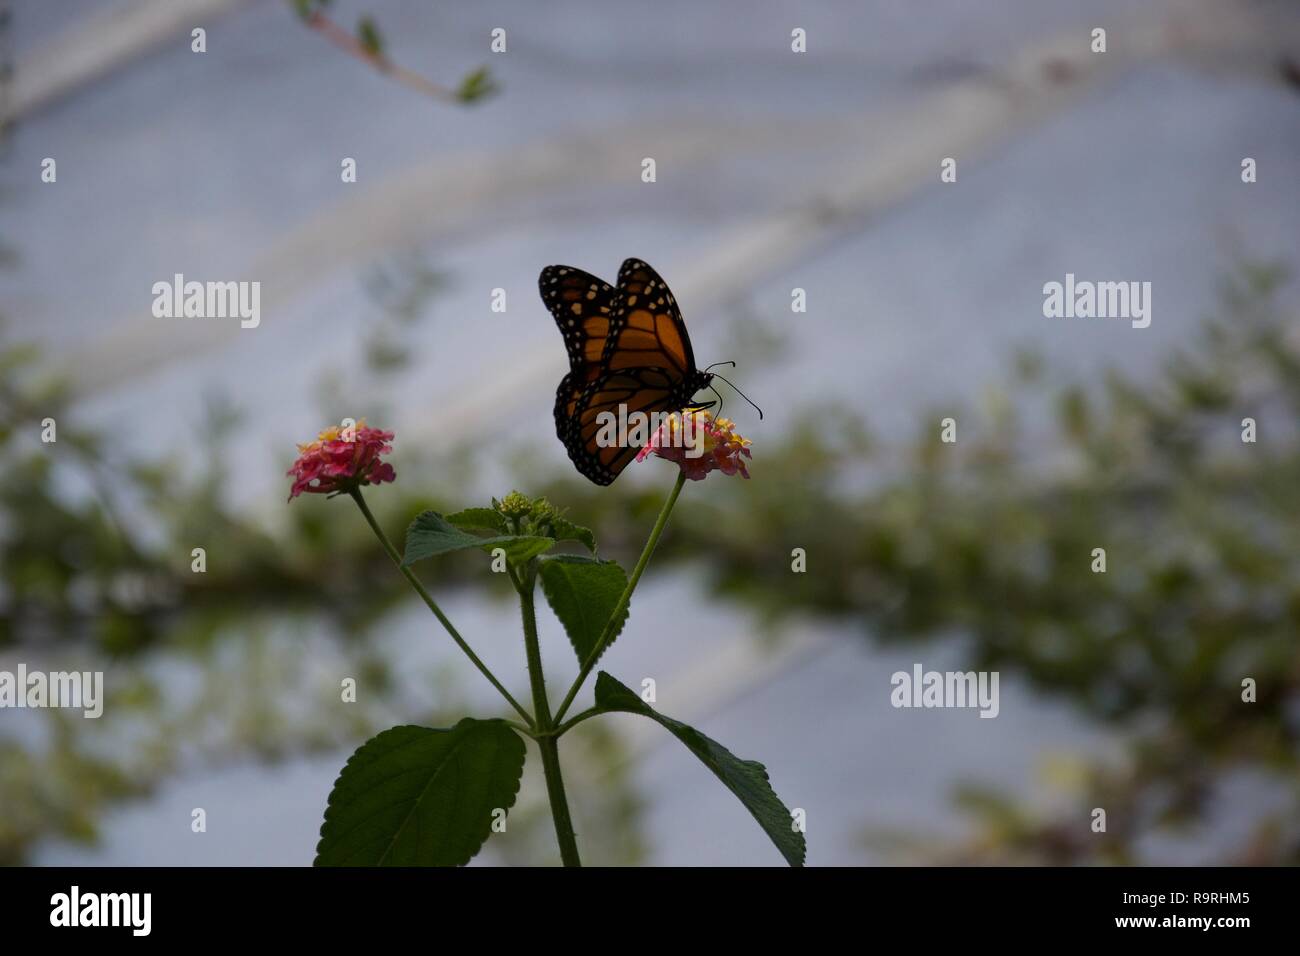 Eine Silhouette einer Orange und Schwarz butterfly sipping von einer kleinen Blume, die es auf der Sitzung Stockfoto